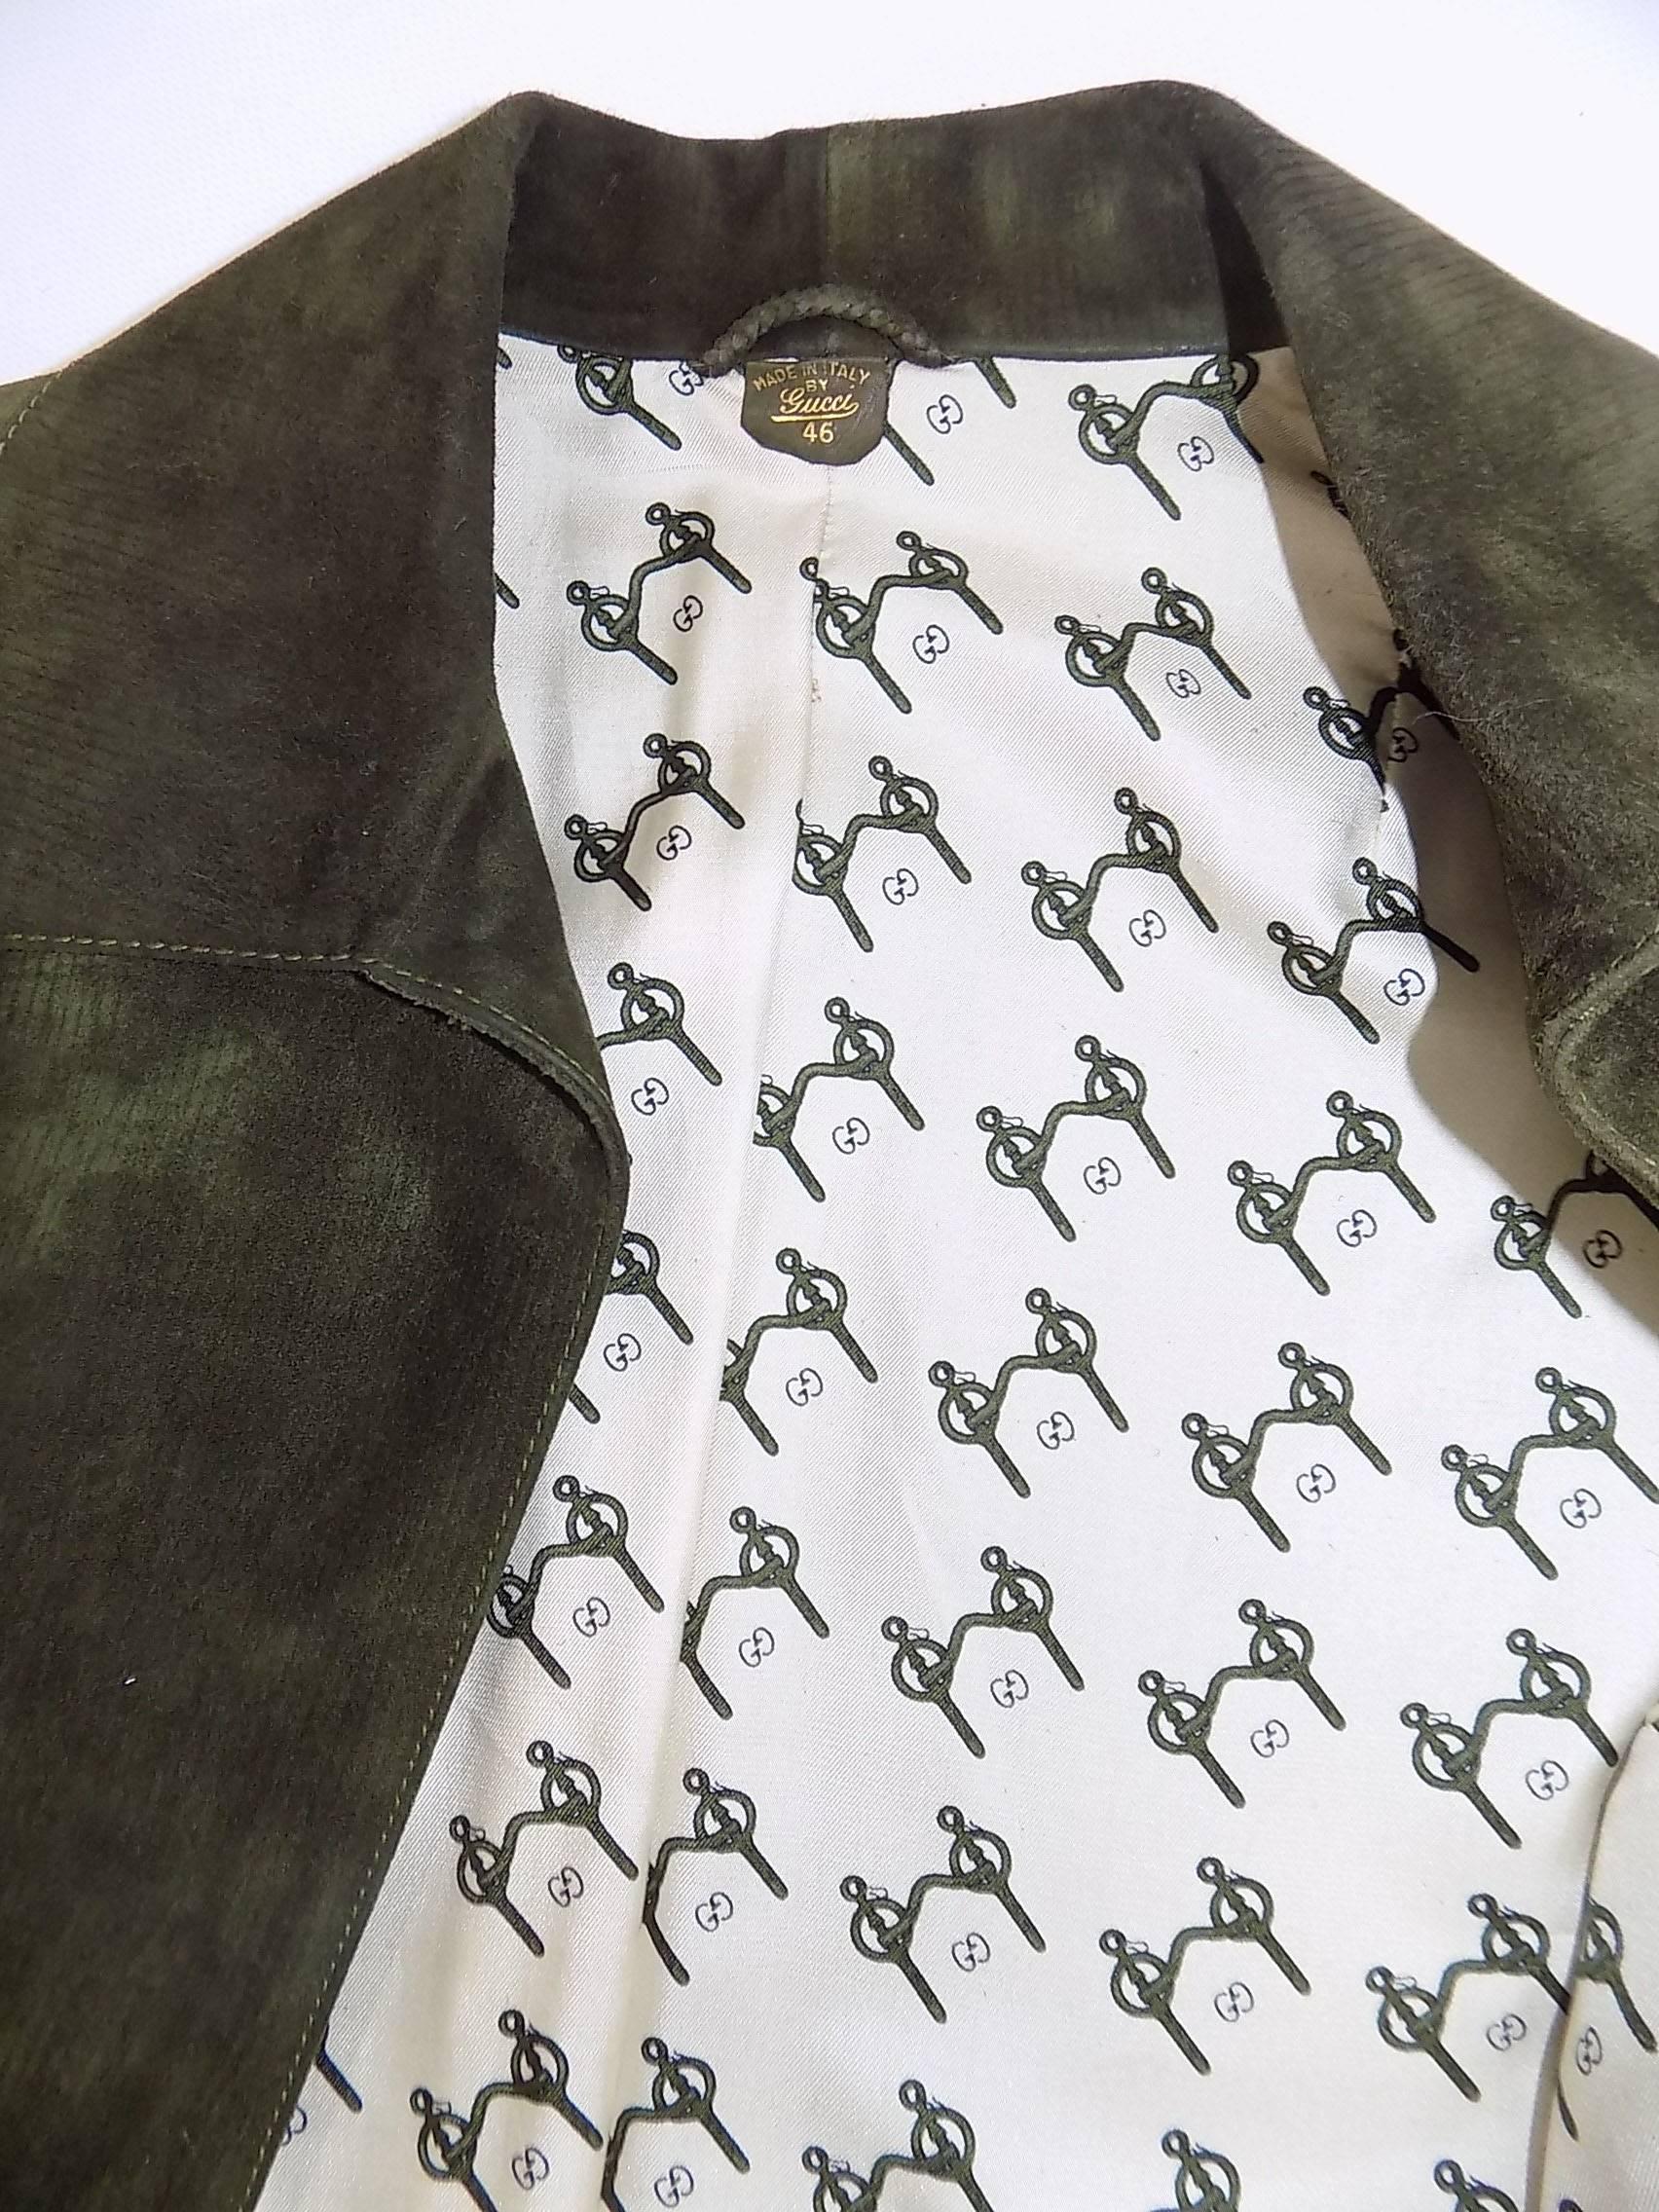 1972 Vintage Gucci Leather Pant suit with Horsebit details  RARE For Sale 3